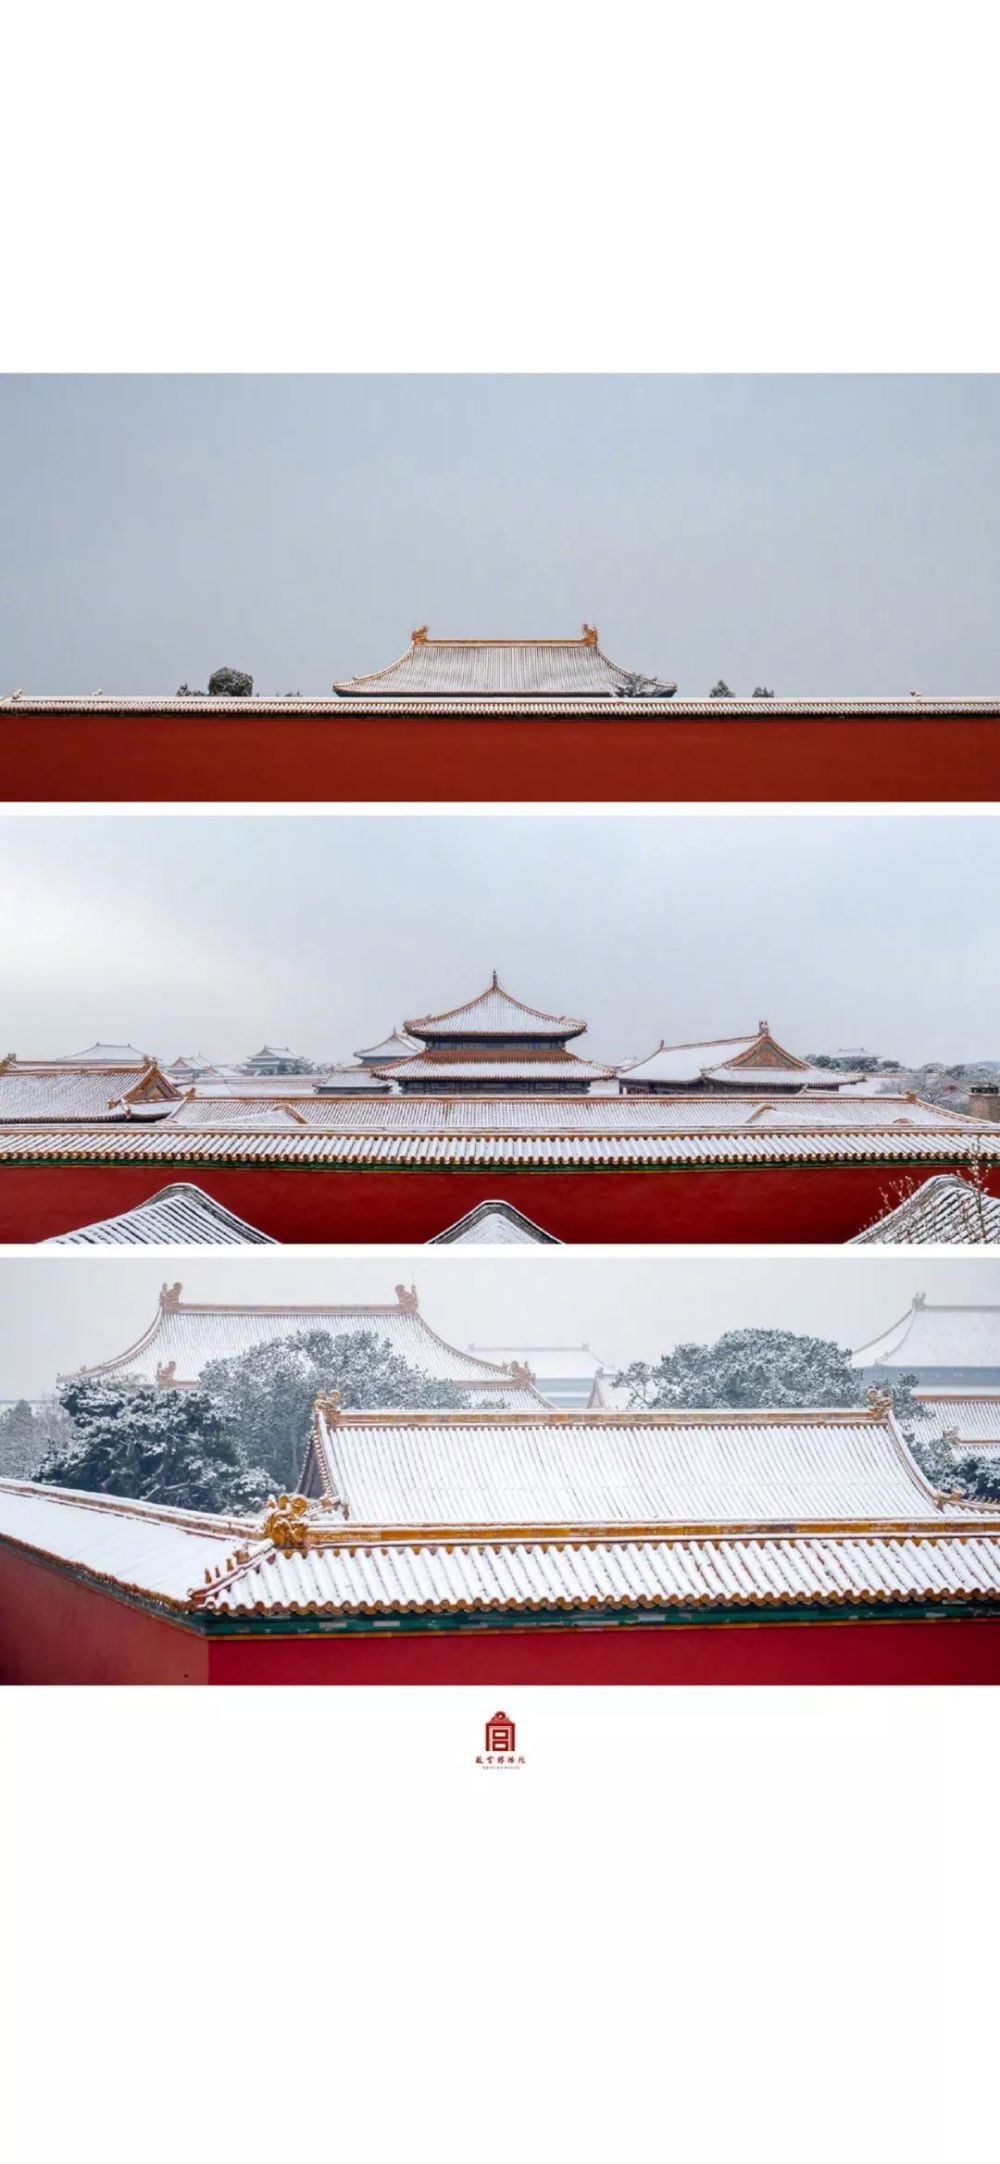 壁纸冬日故宫雪景手机壁纸优雅大气